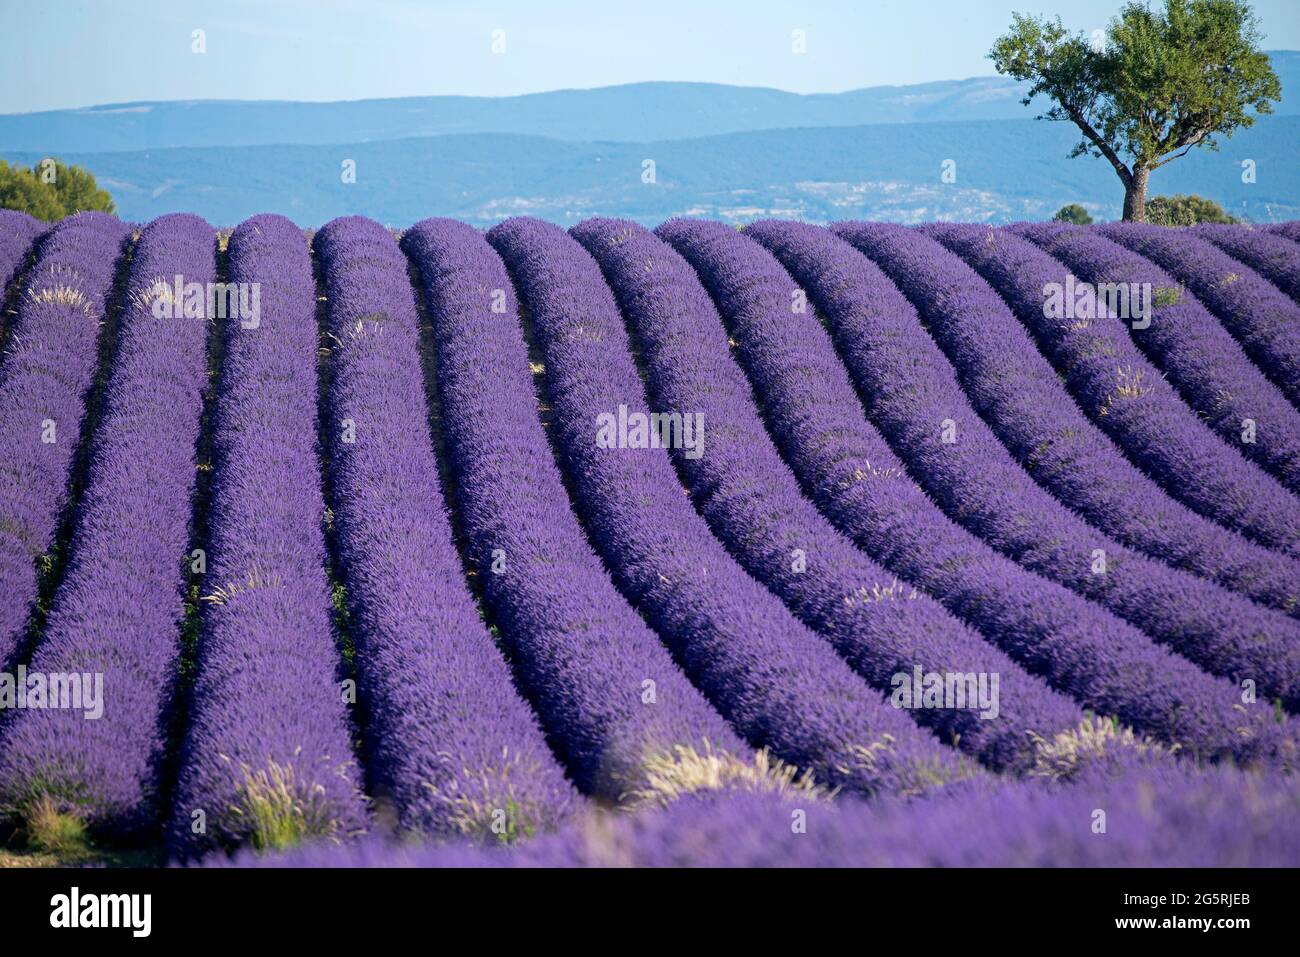 France, Alpes de Haute Provence (04), plateau de Valensole, lavender fields (Lavandula sp.) and mountains Stock Photo